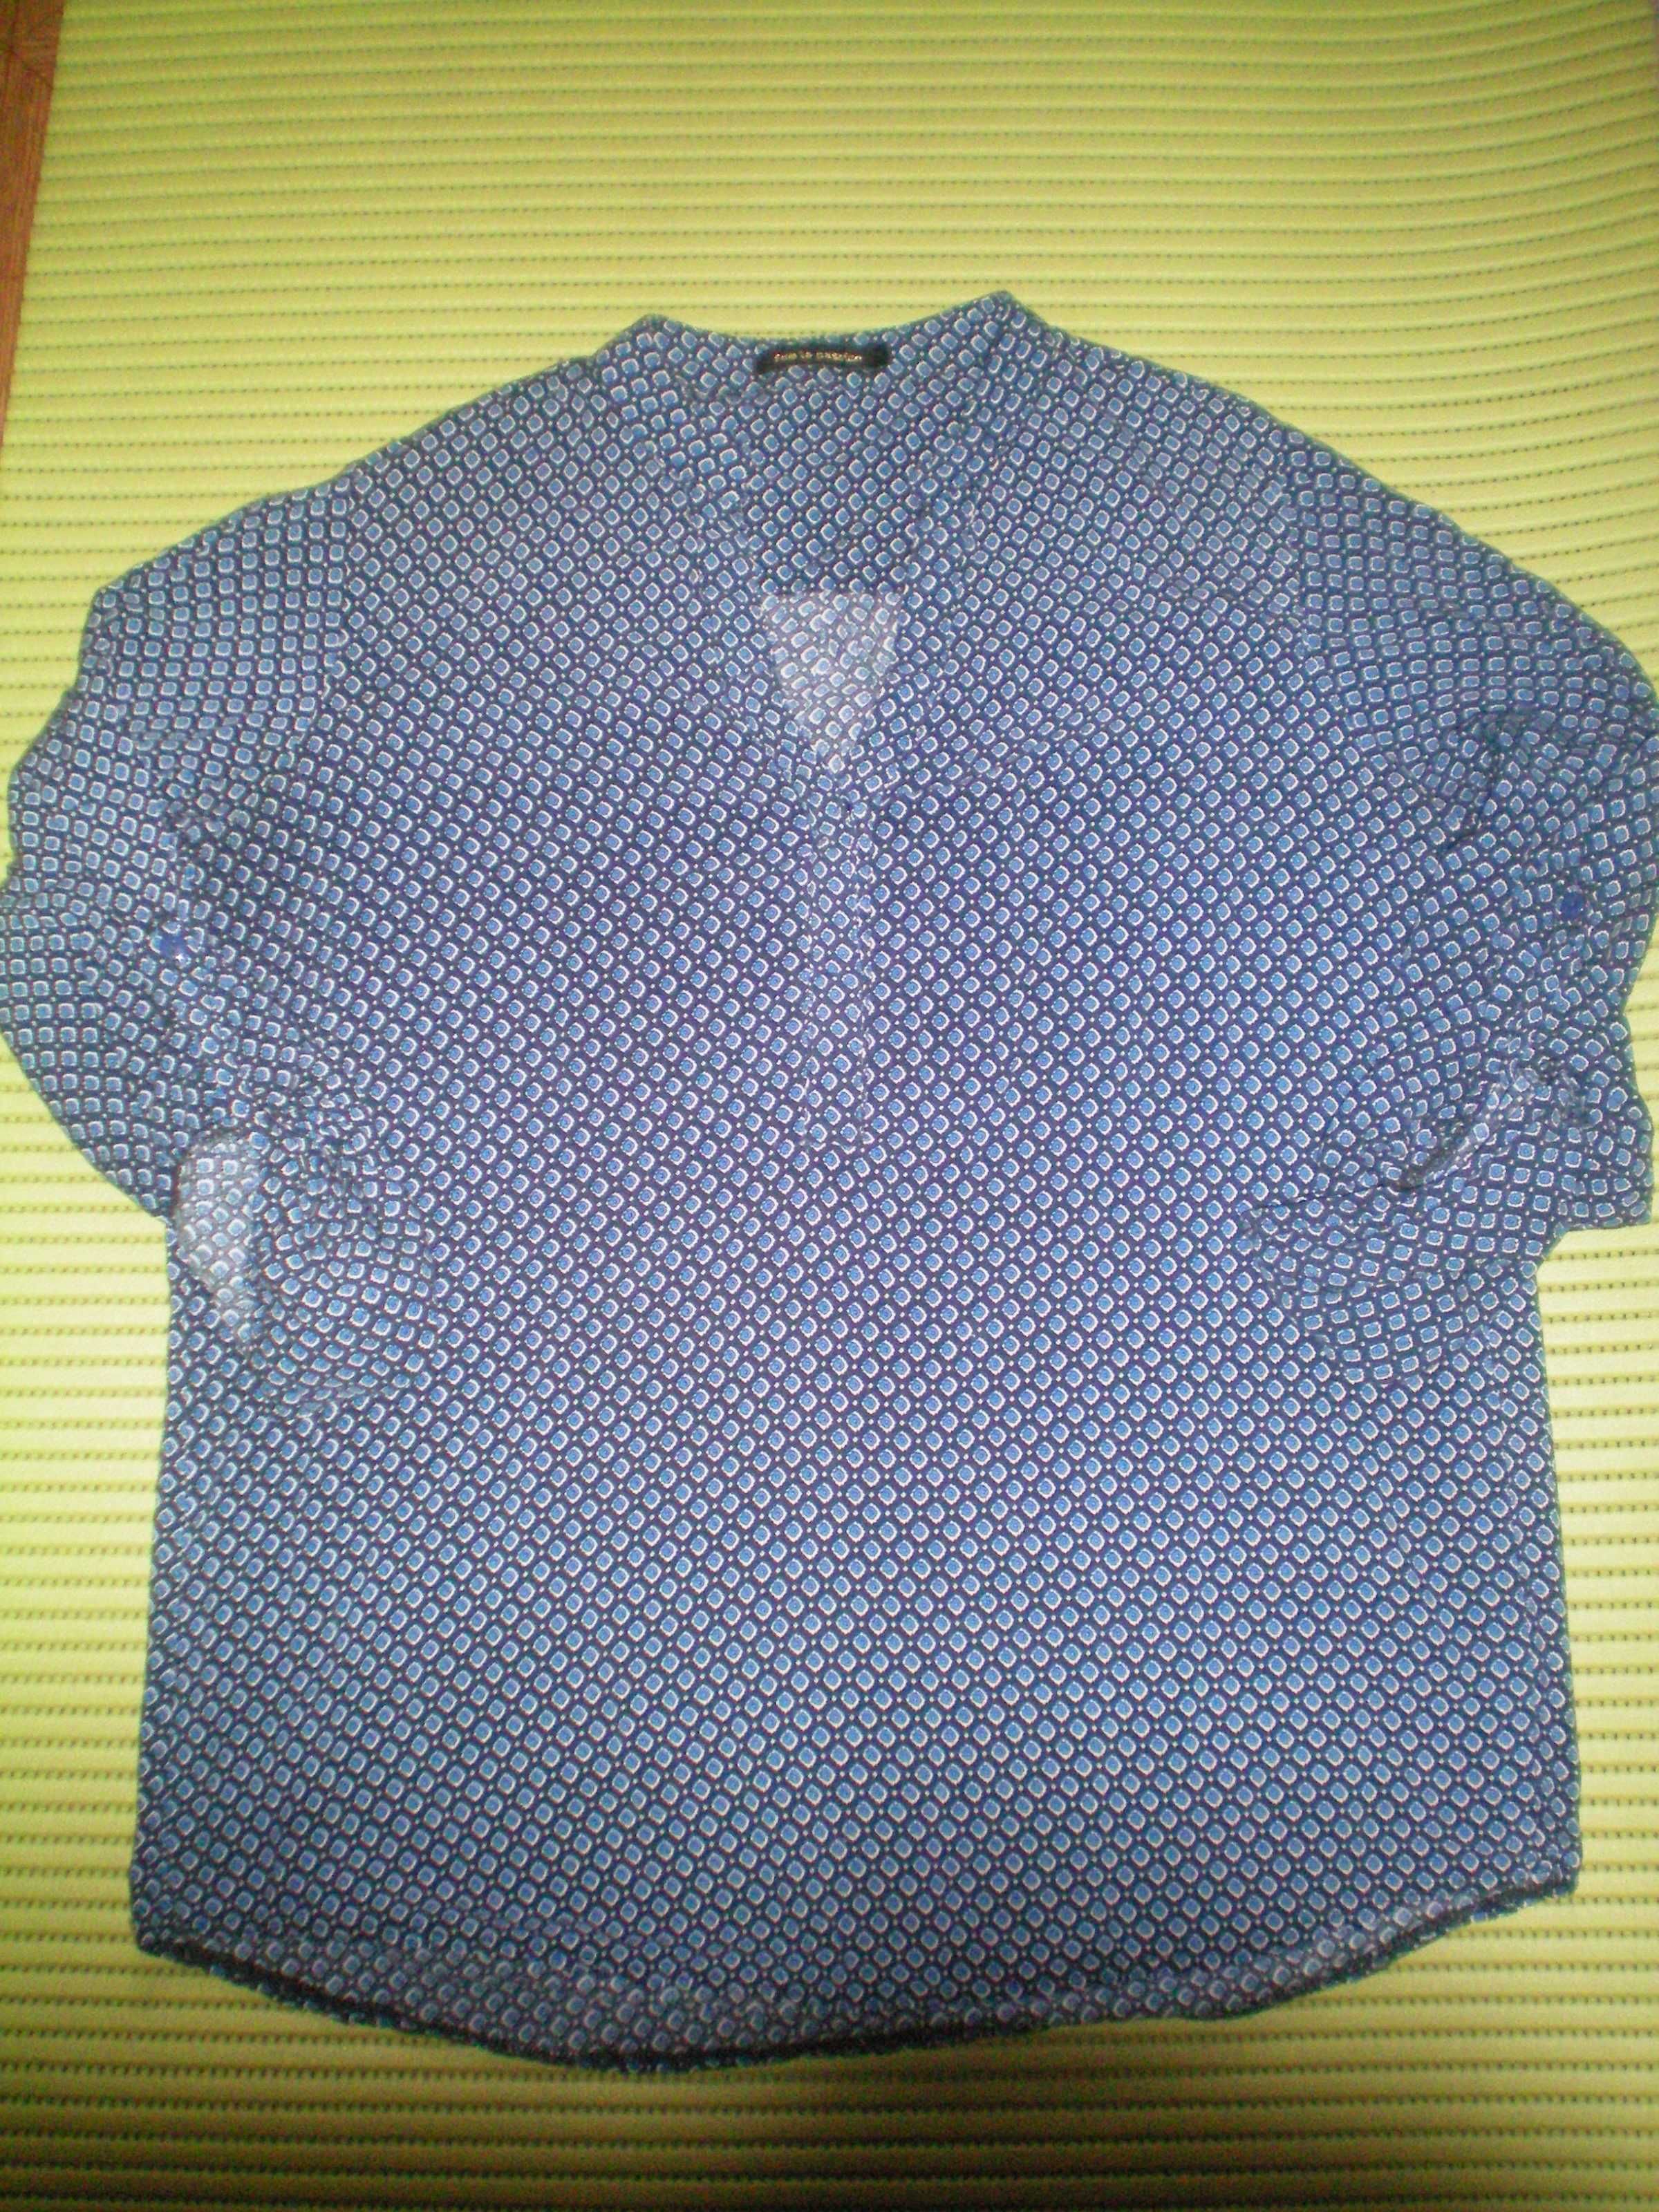 Блуза блузка рубашка Mango и др. красная цветная сорочка рубашки M L